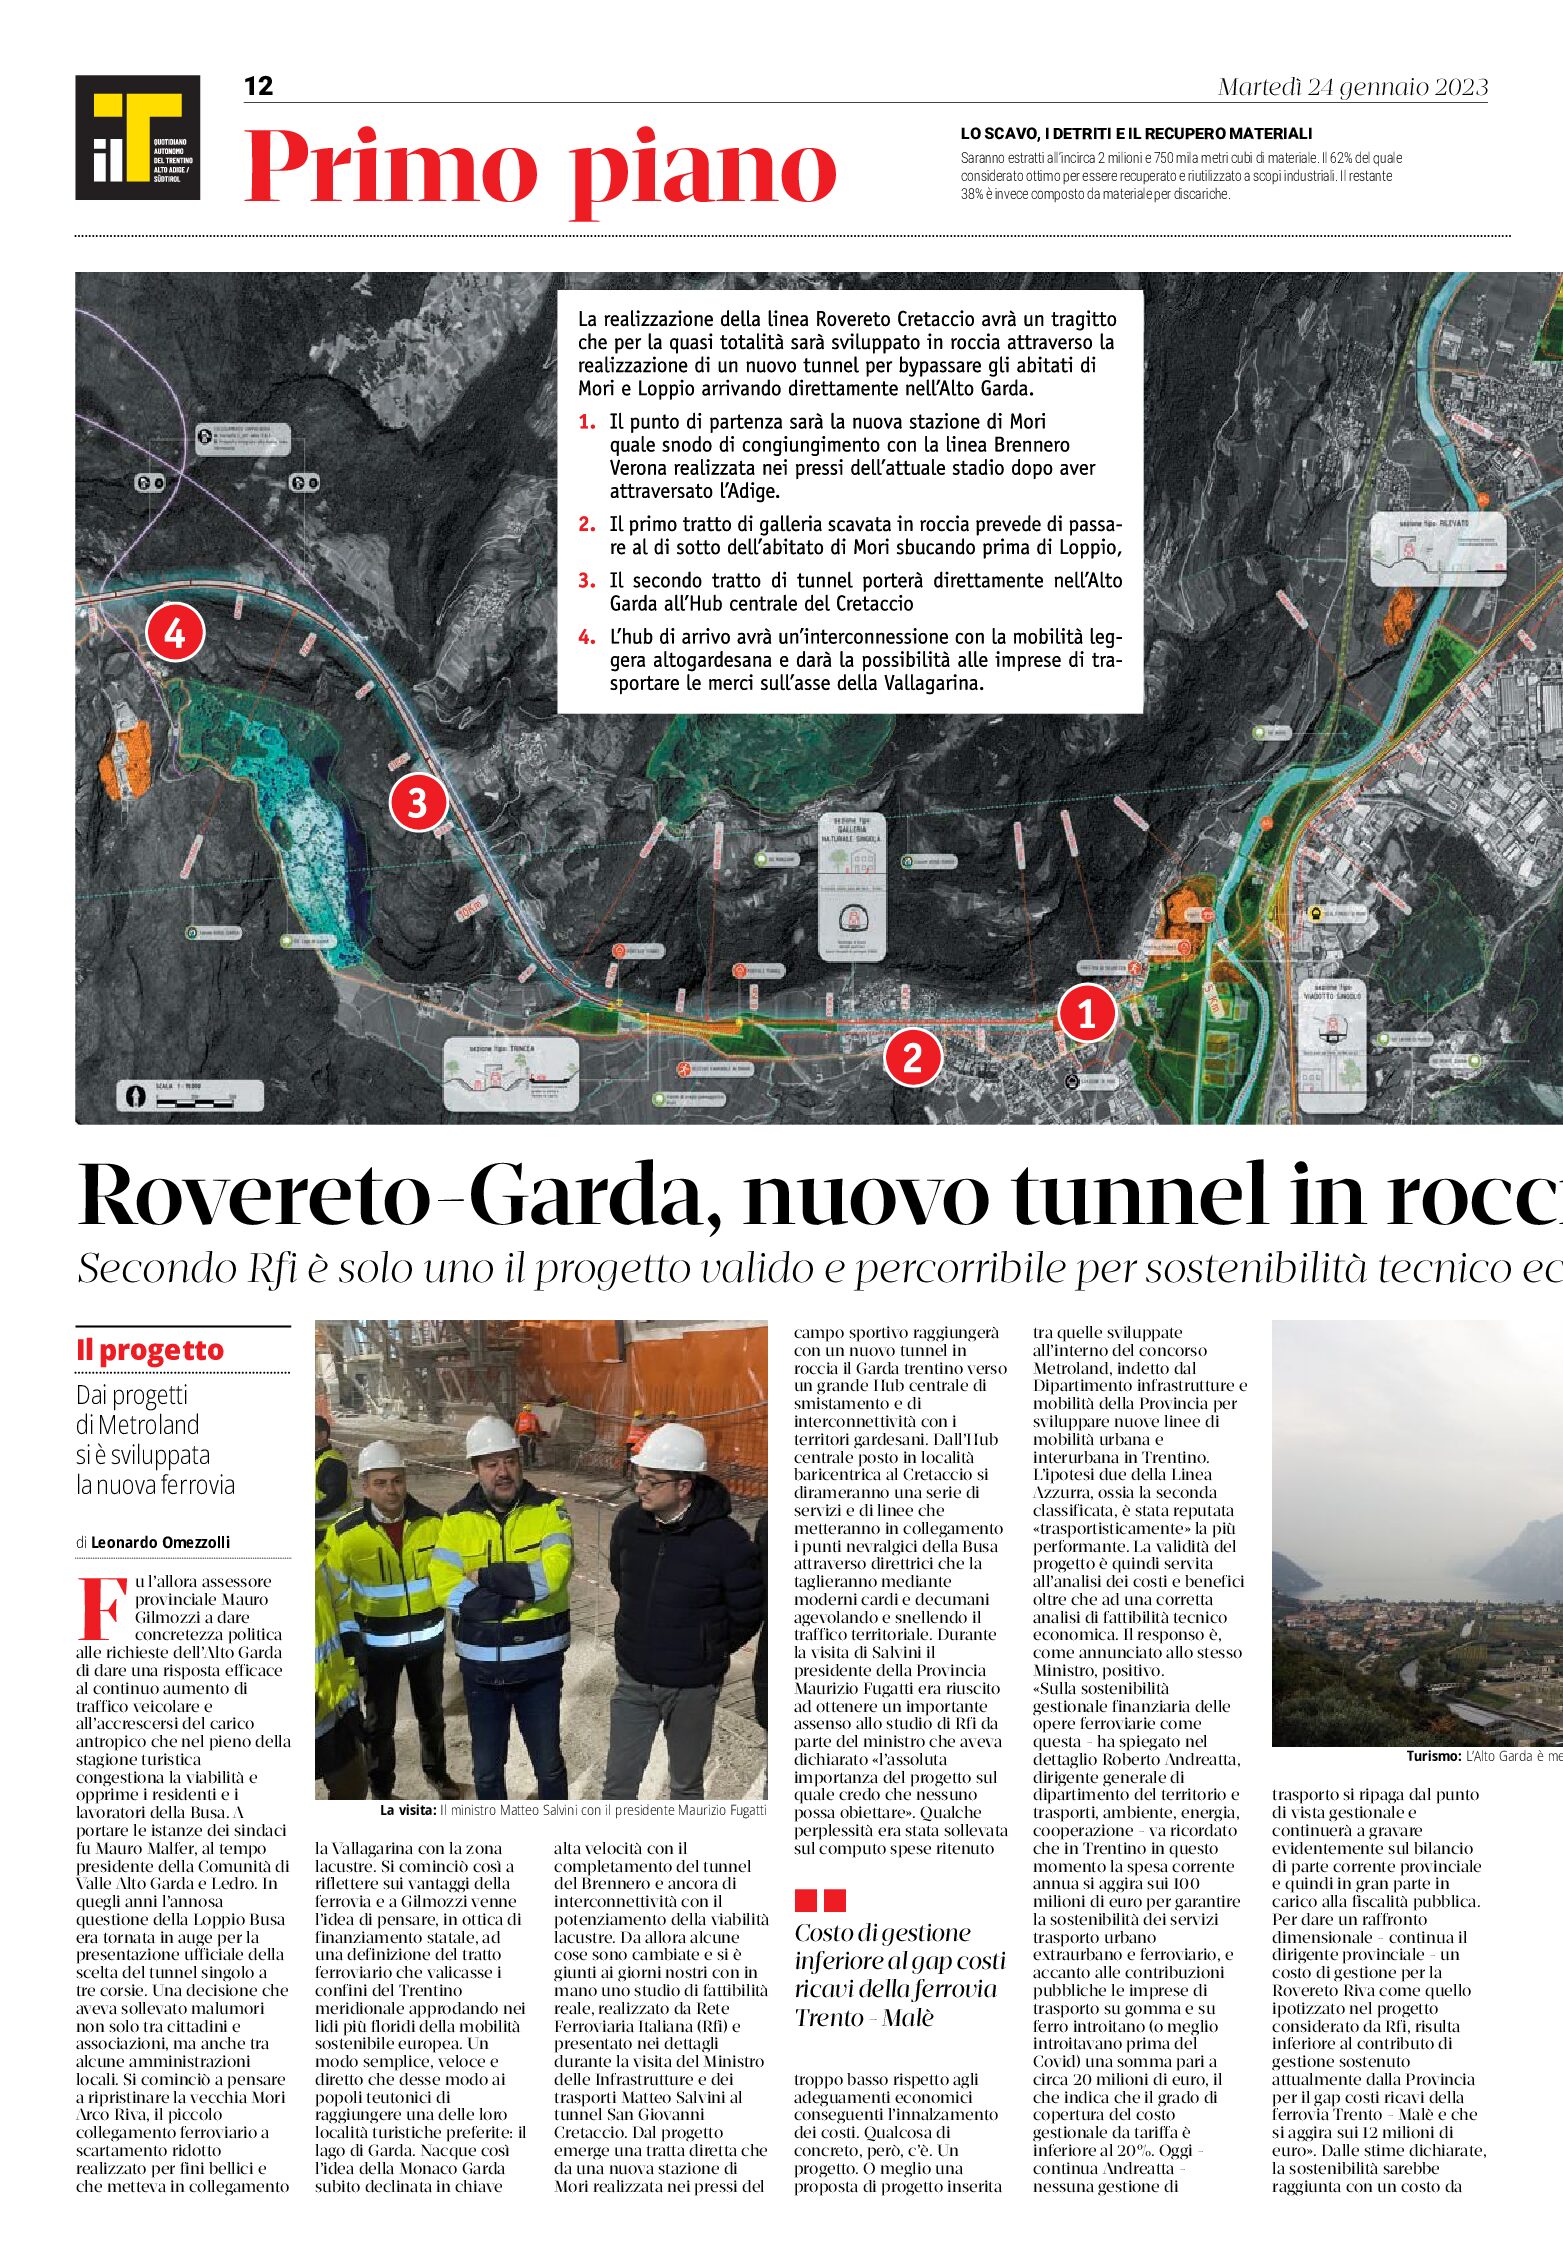 Mobilità: Rovereto-Garda nuovo tunnel in roccia